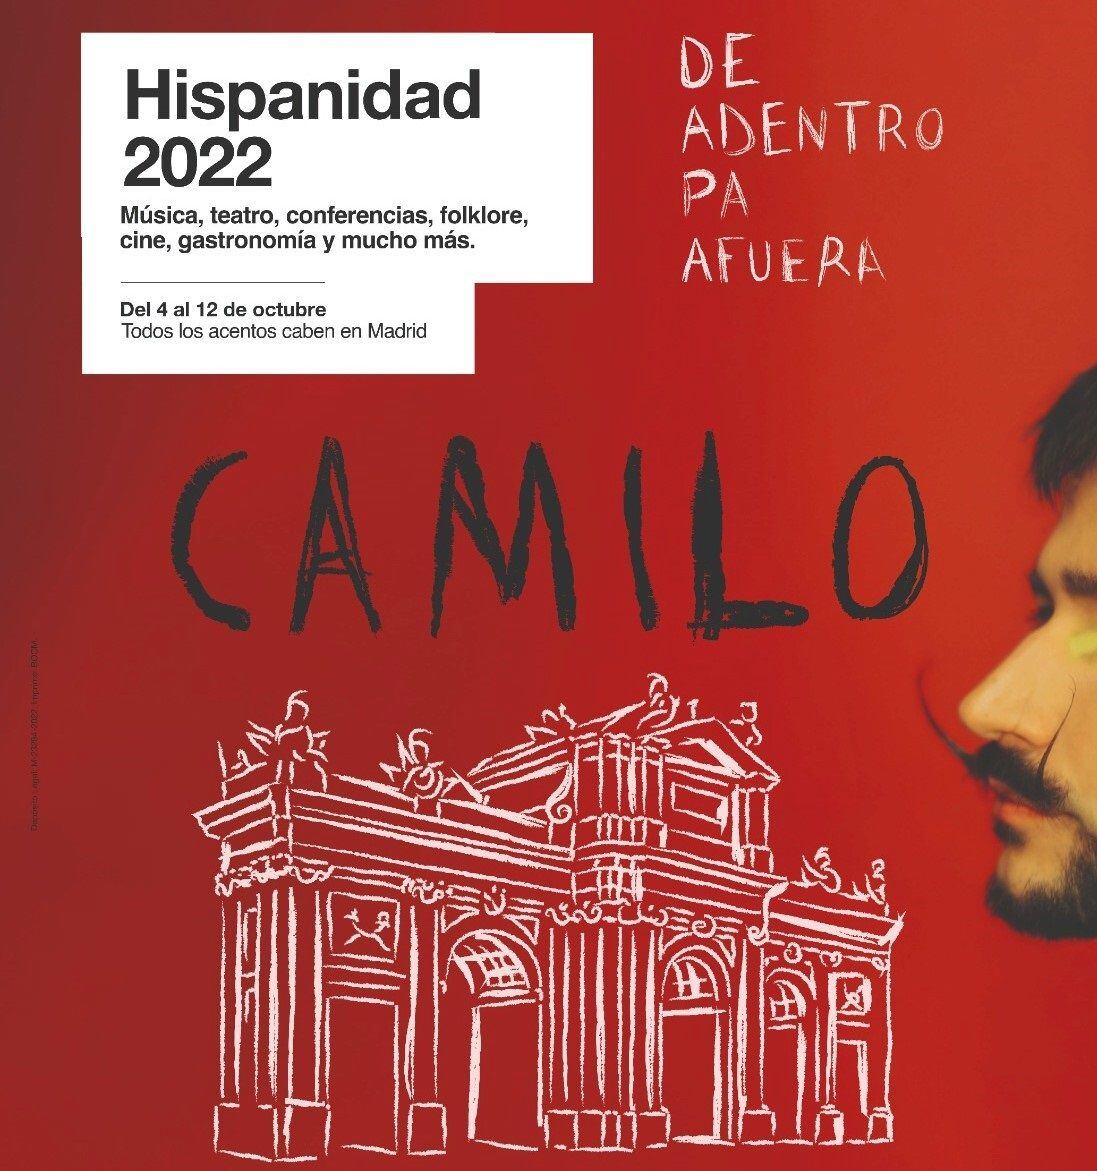 Cartel del concierto del cantante Camilo, protagonista de Hispanidad 2022 del próximo 9 de octubre.